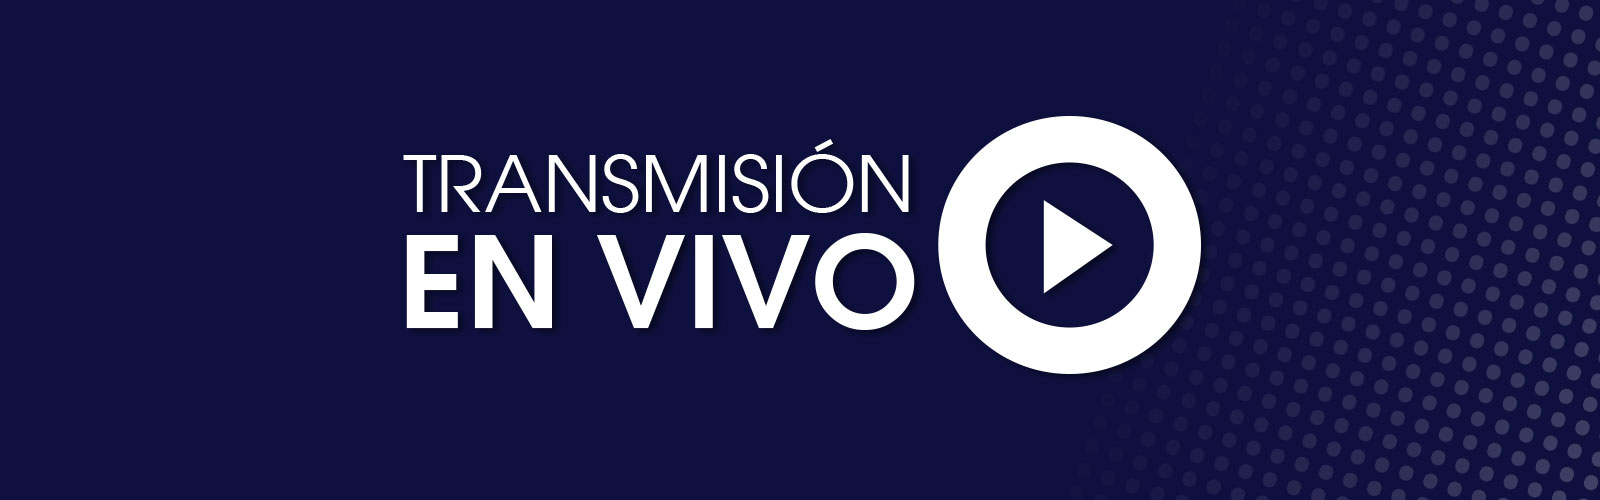 Televen Tu Canal Transmision En Vivo